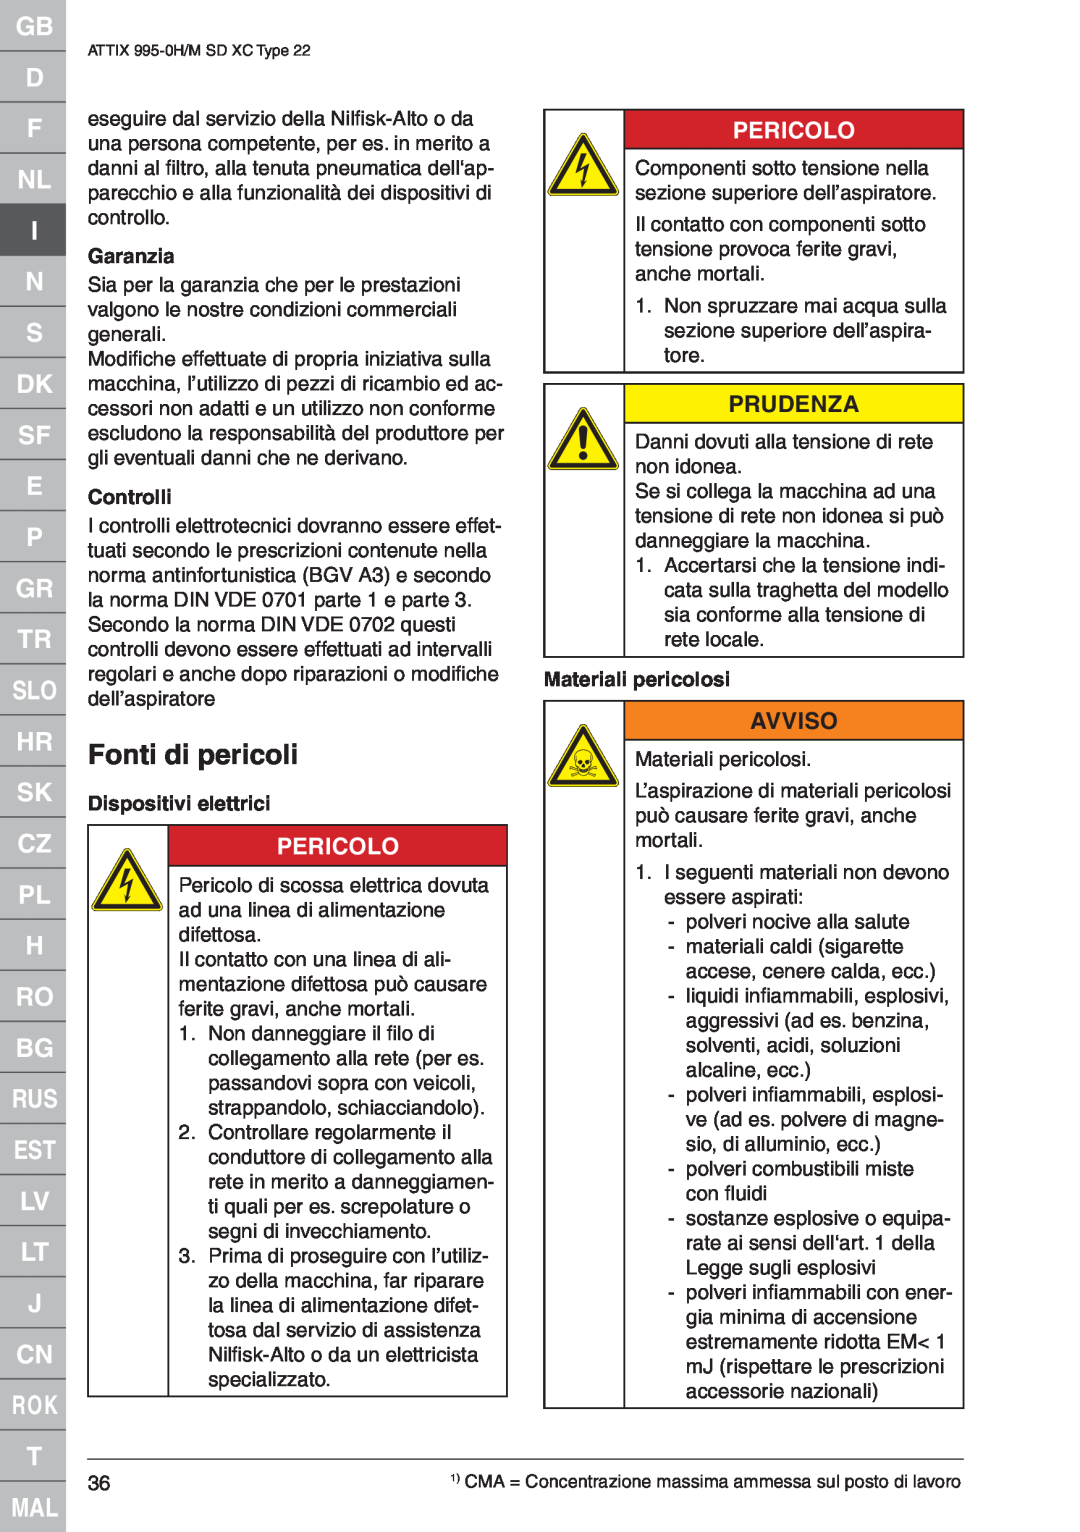 Nilfisk-ALTO ATTIX 995-0H quick start Fonti di pericoli, Garanzia, EControlli, Dispositivi elettrici, Materiali pericolosi 